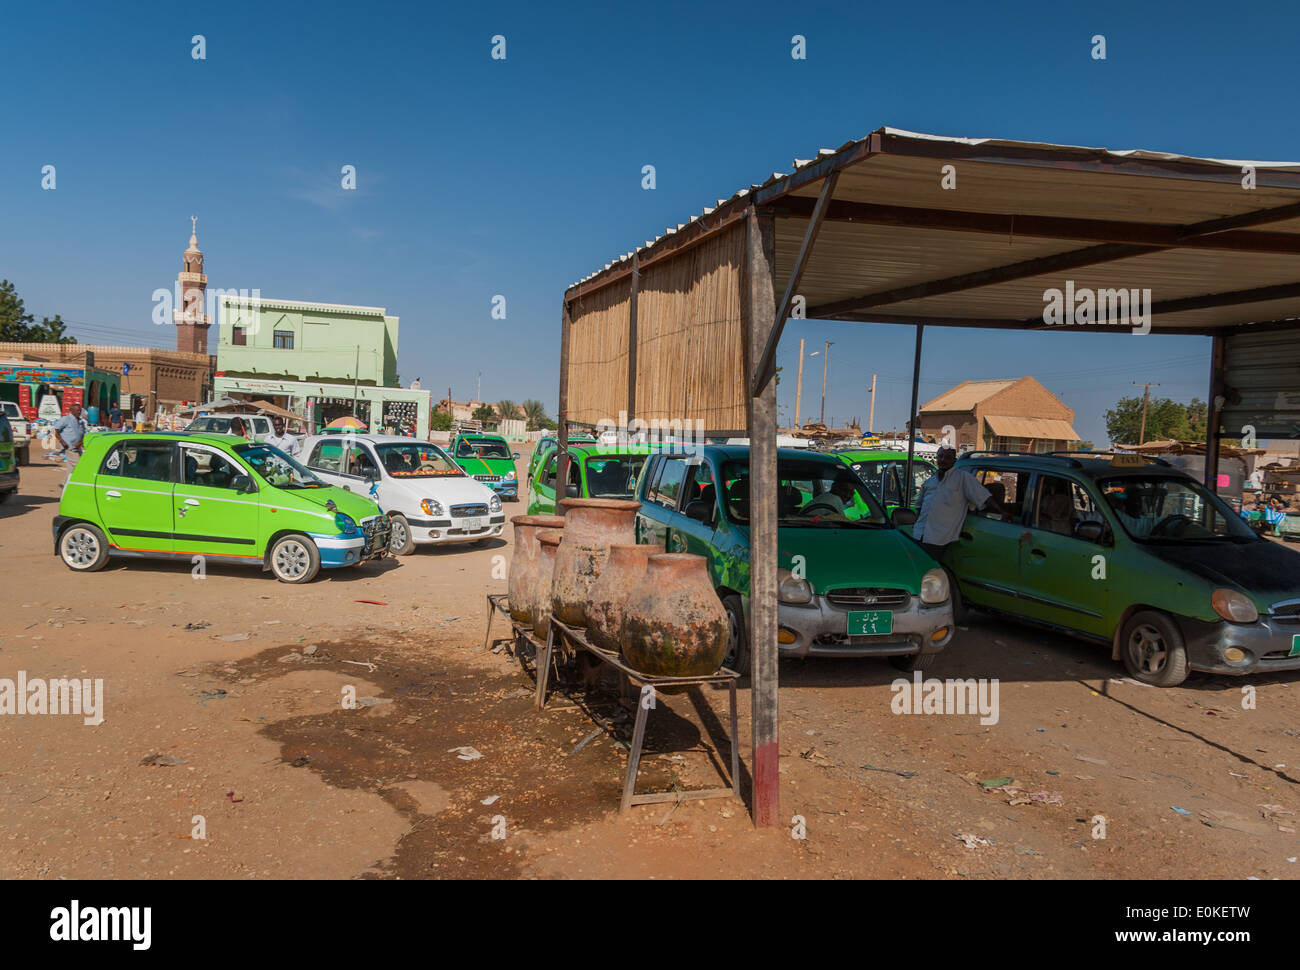 Des taxis Hyundai vert à combler (gaz) et la station de zeers, (au centre de la photographie), Karima, le nord du Soudan Banque D'Images